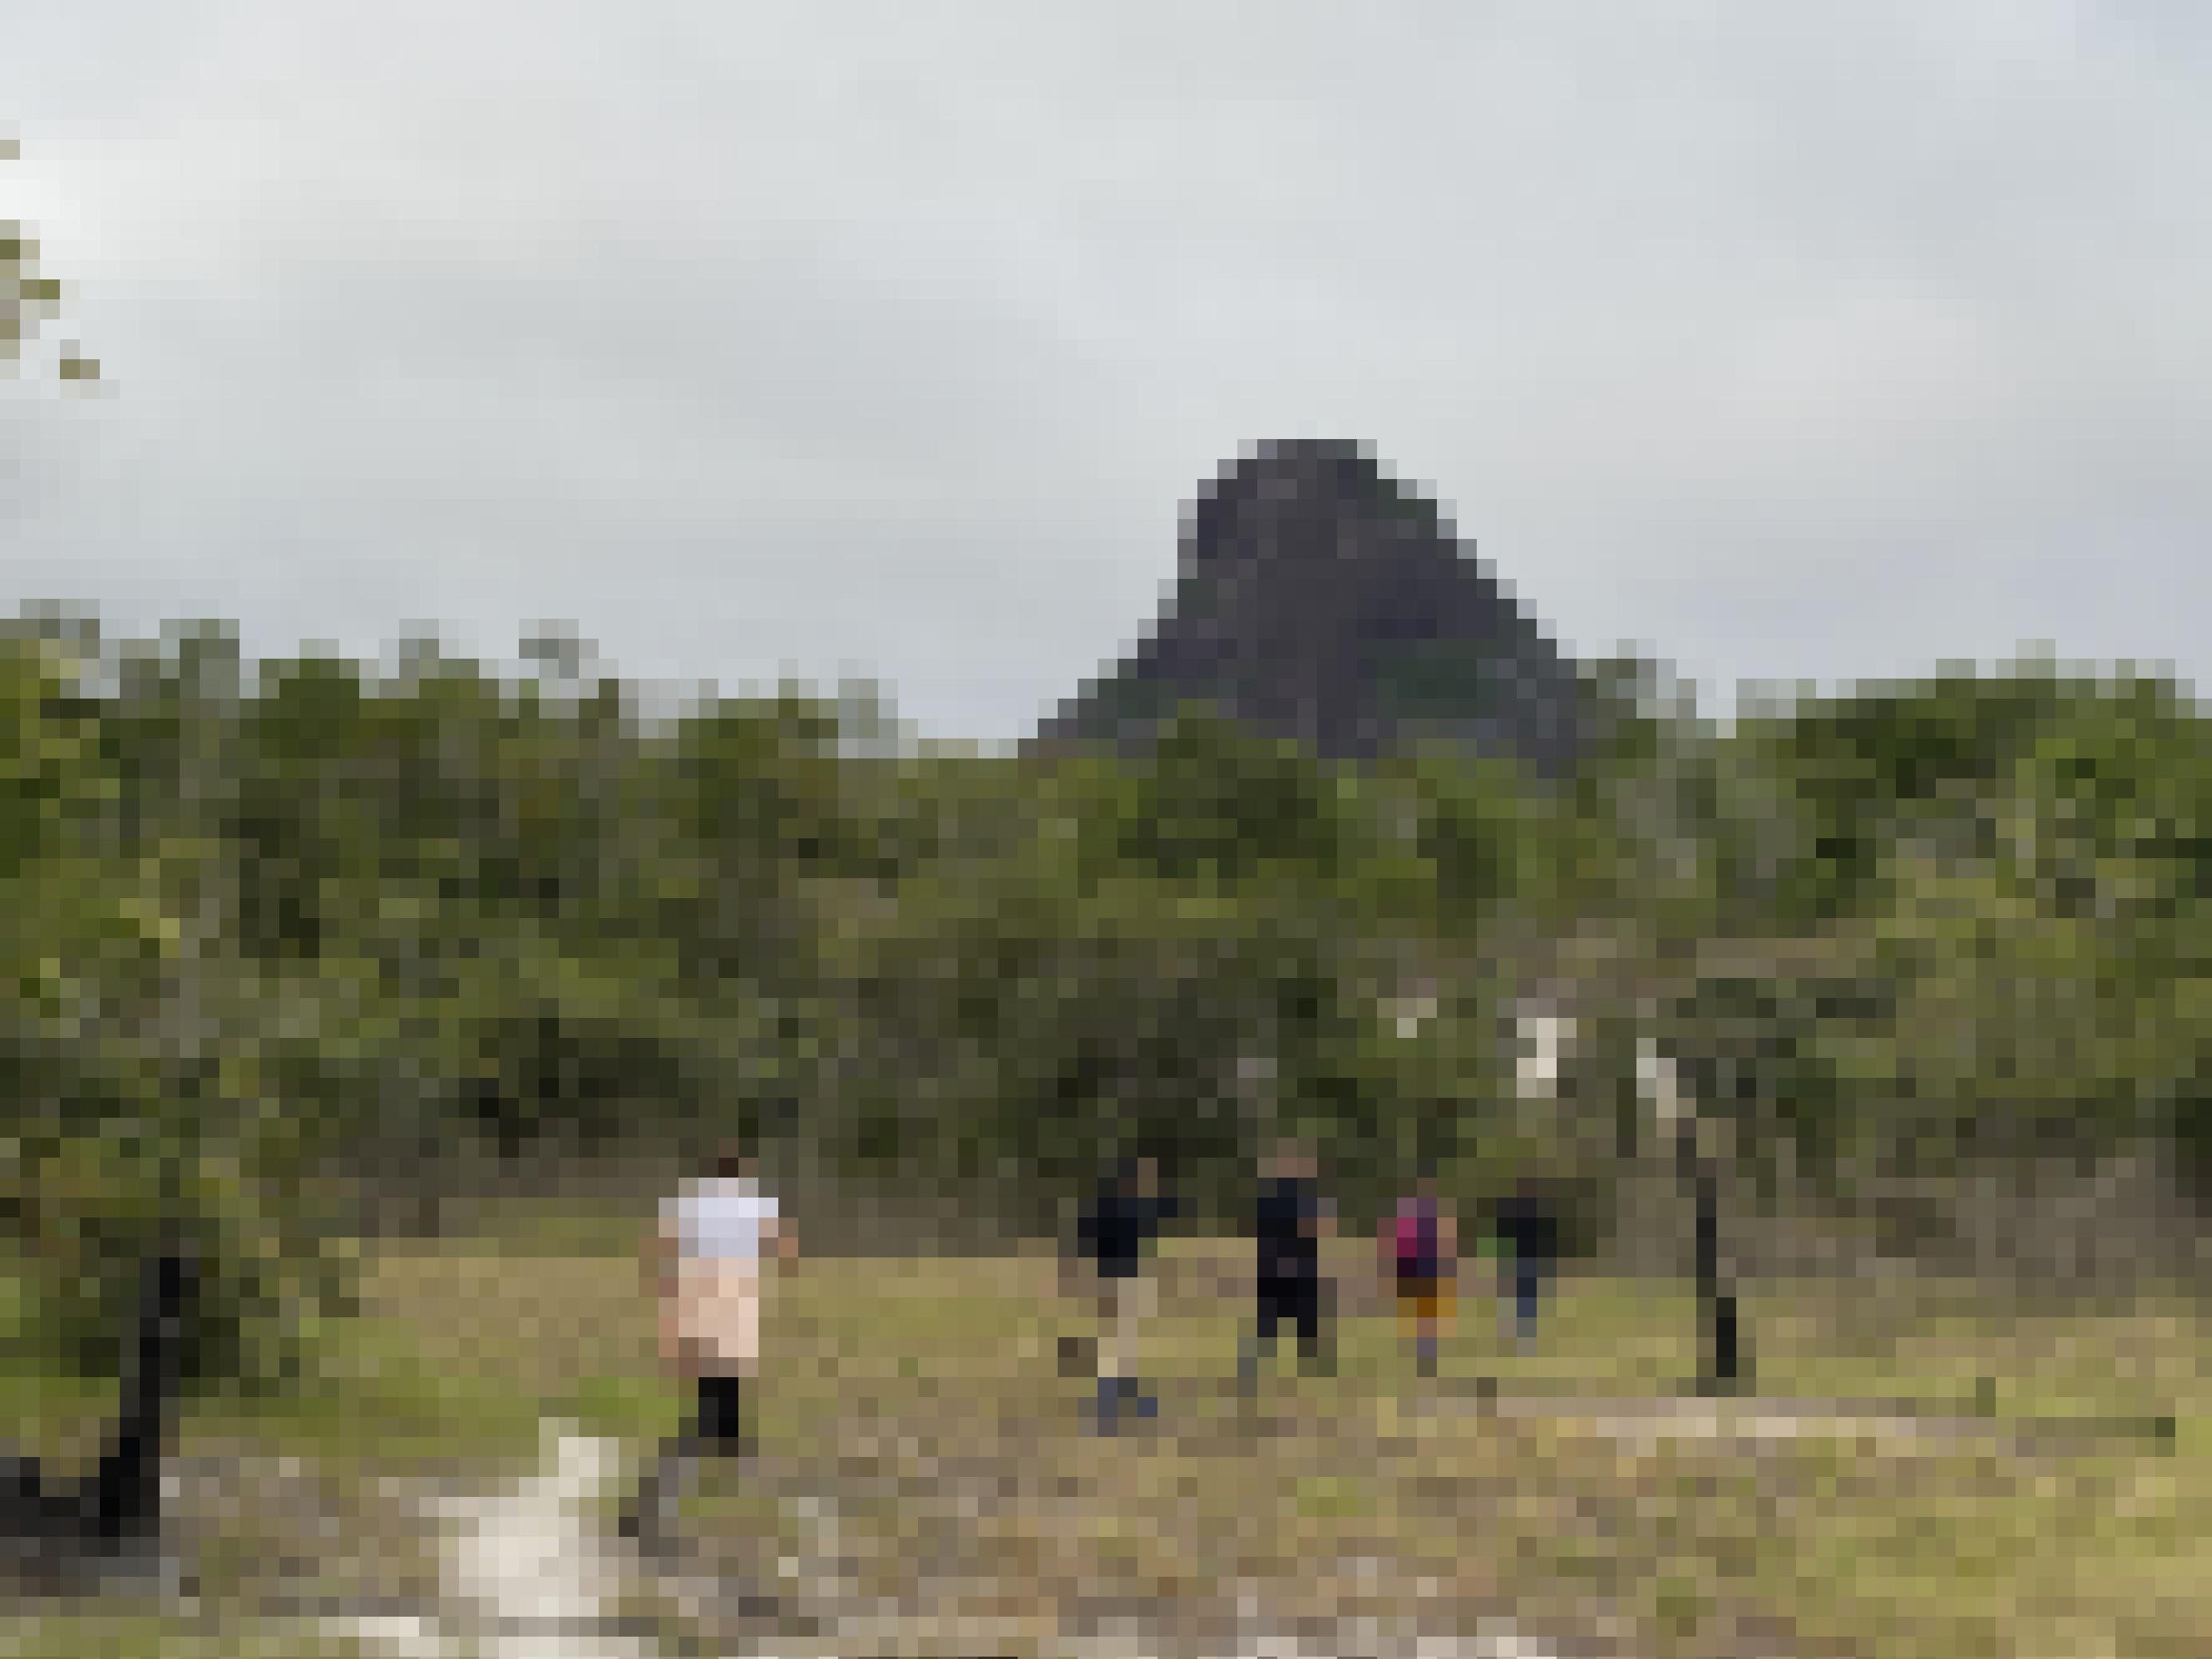 Eine Gruppe Wanderer auf sandigem Boden, dahinter ein Tafelberg.